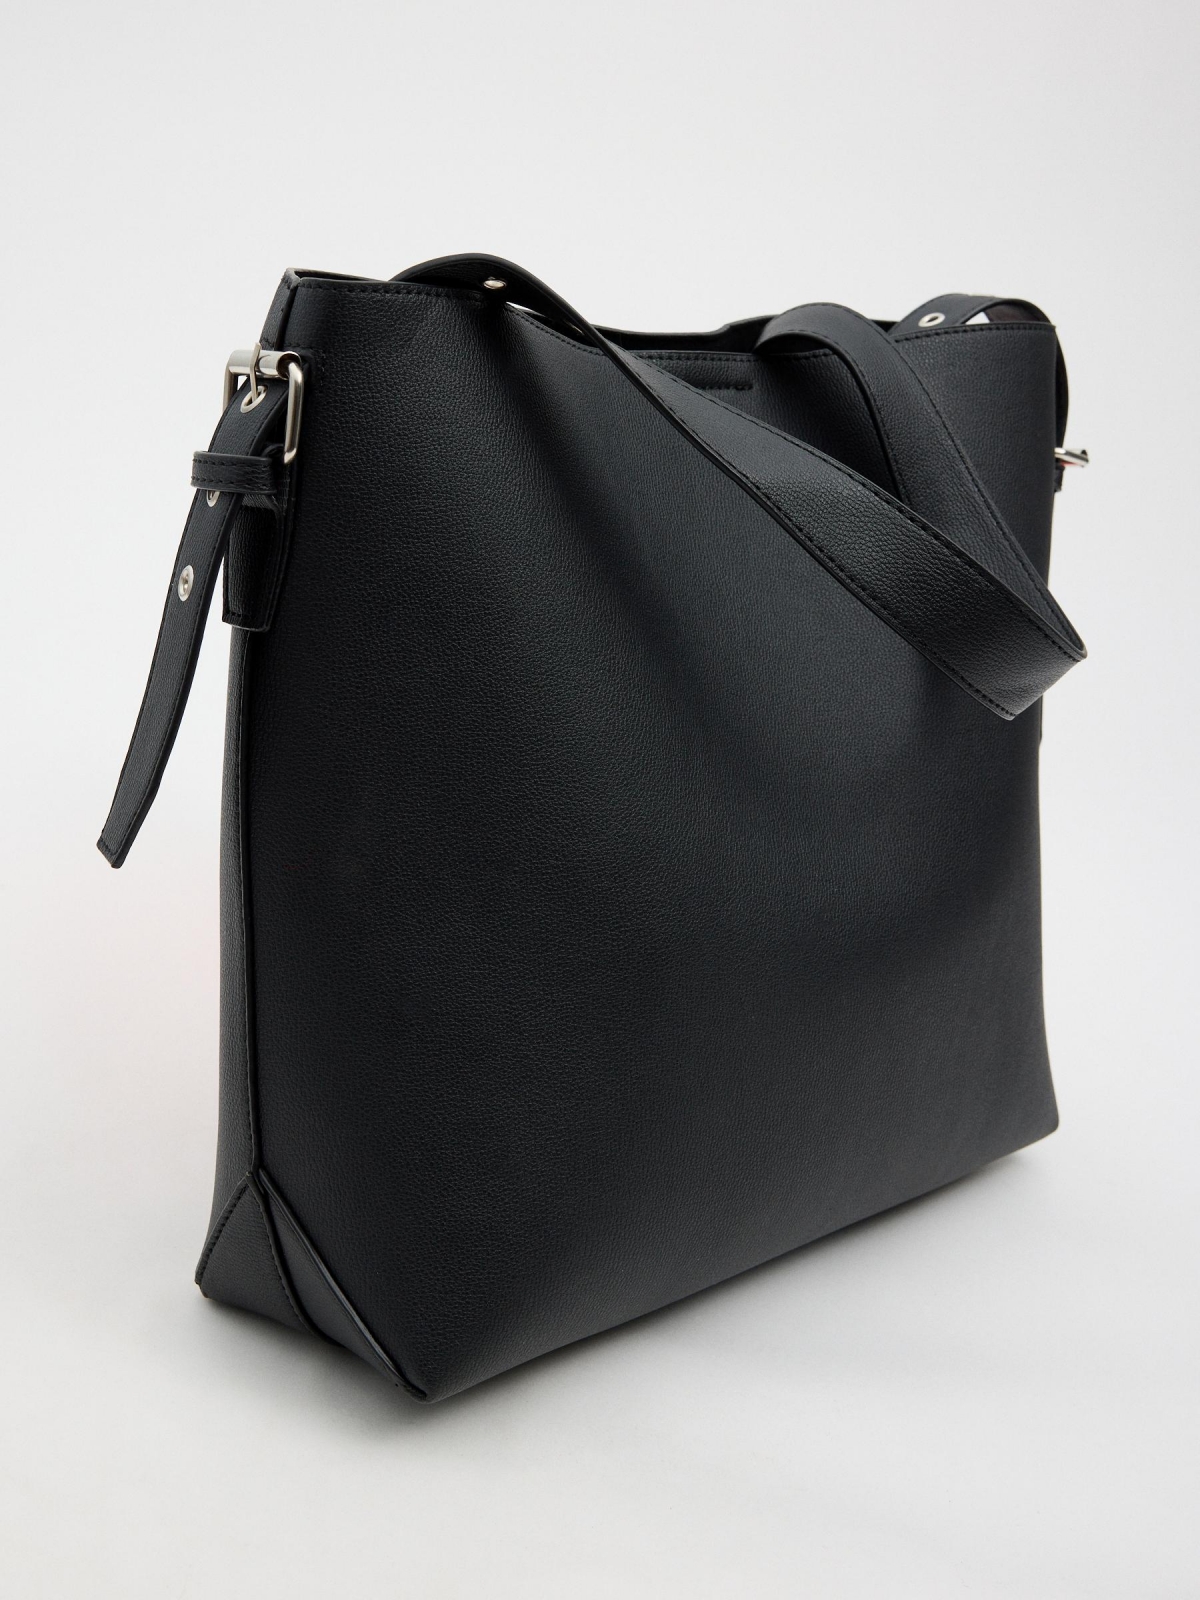 Adjustable strap shopper bag black back view